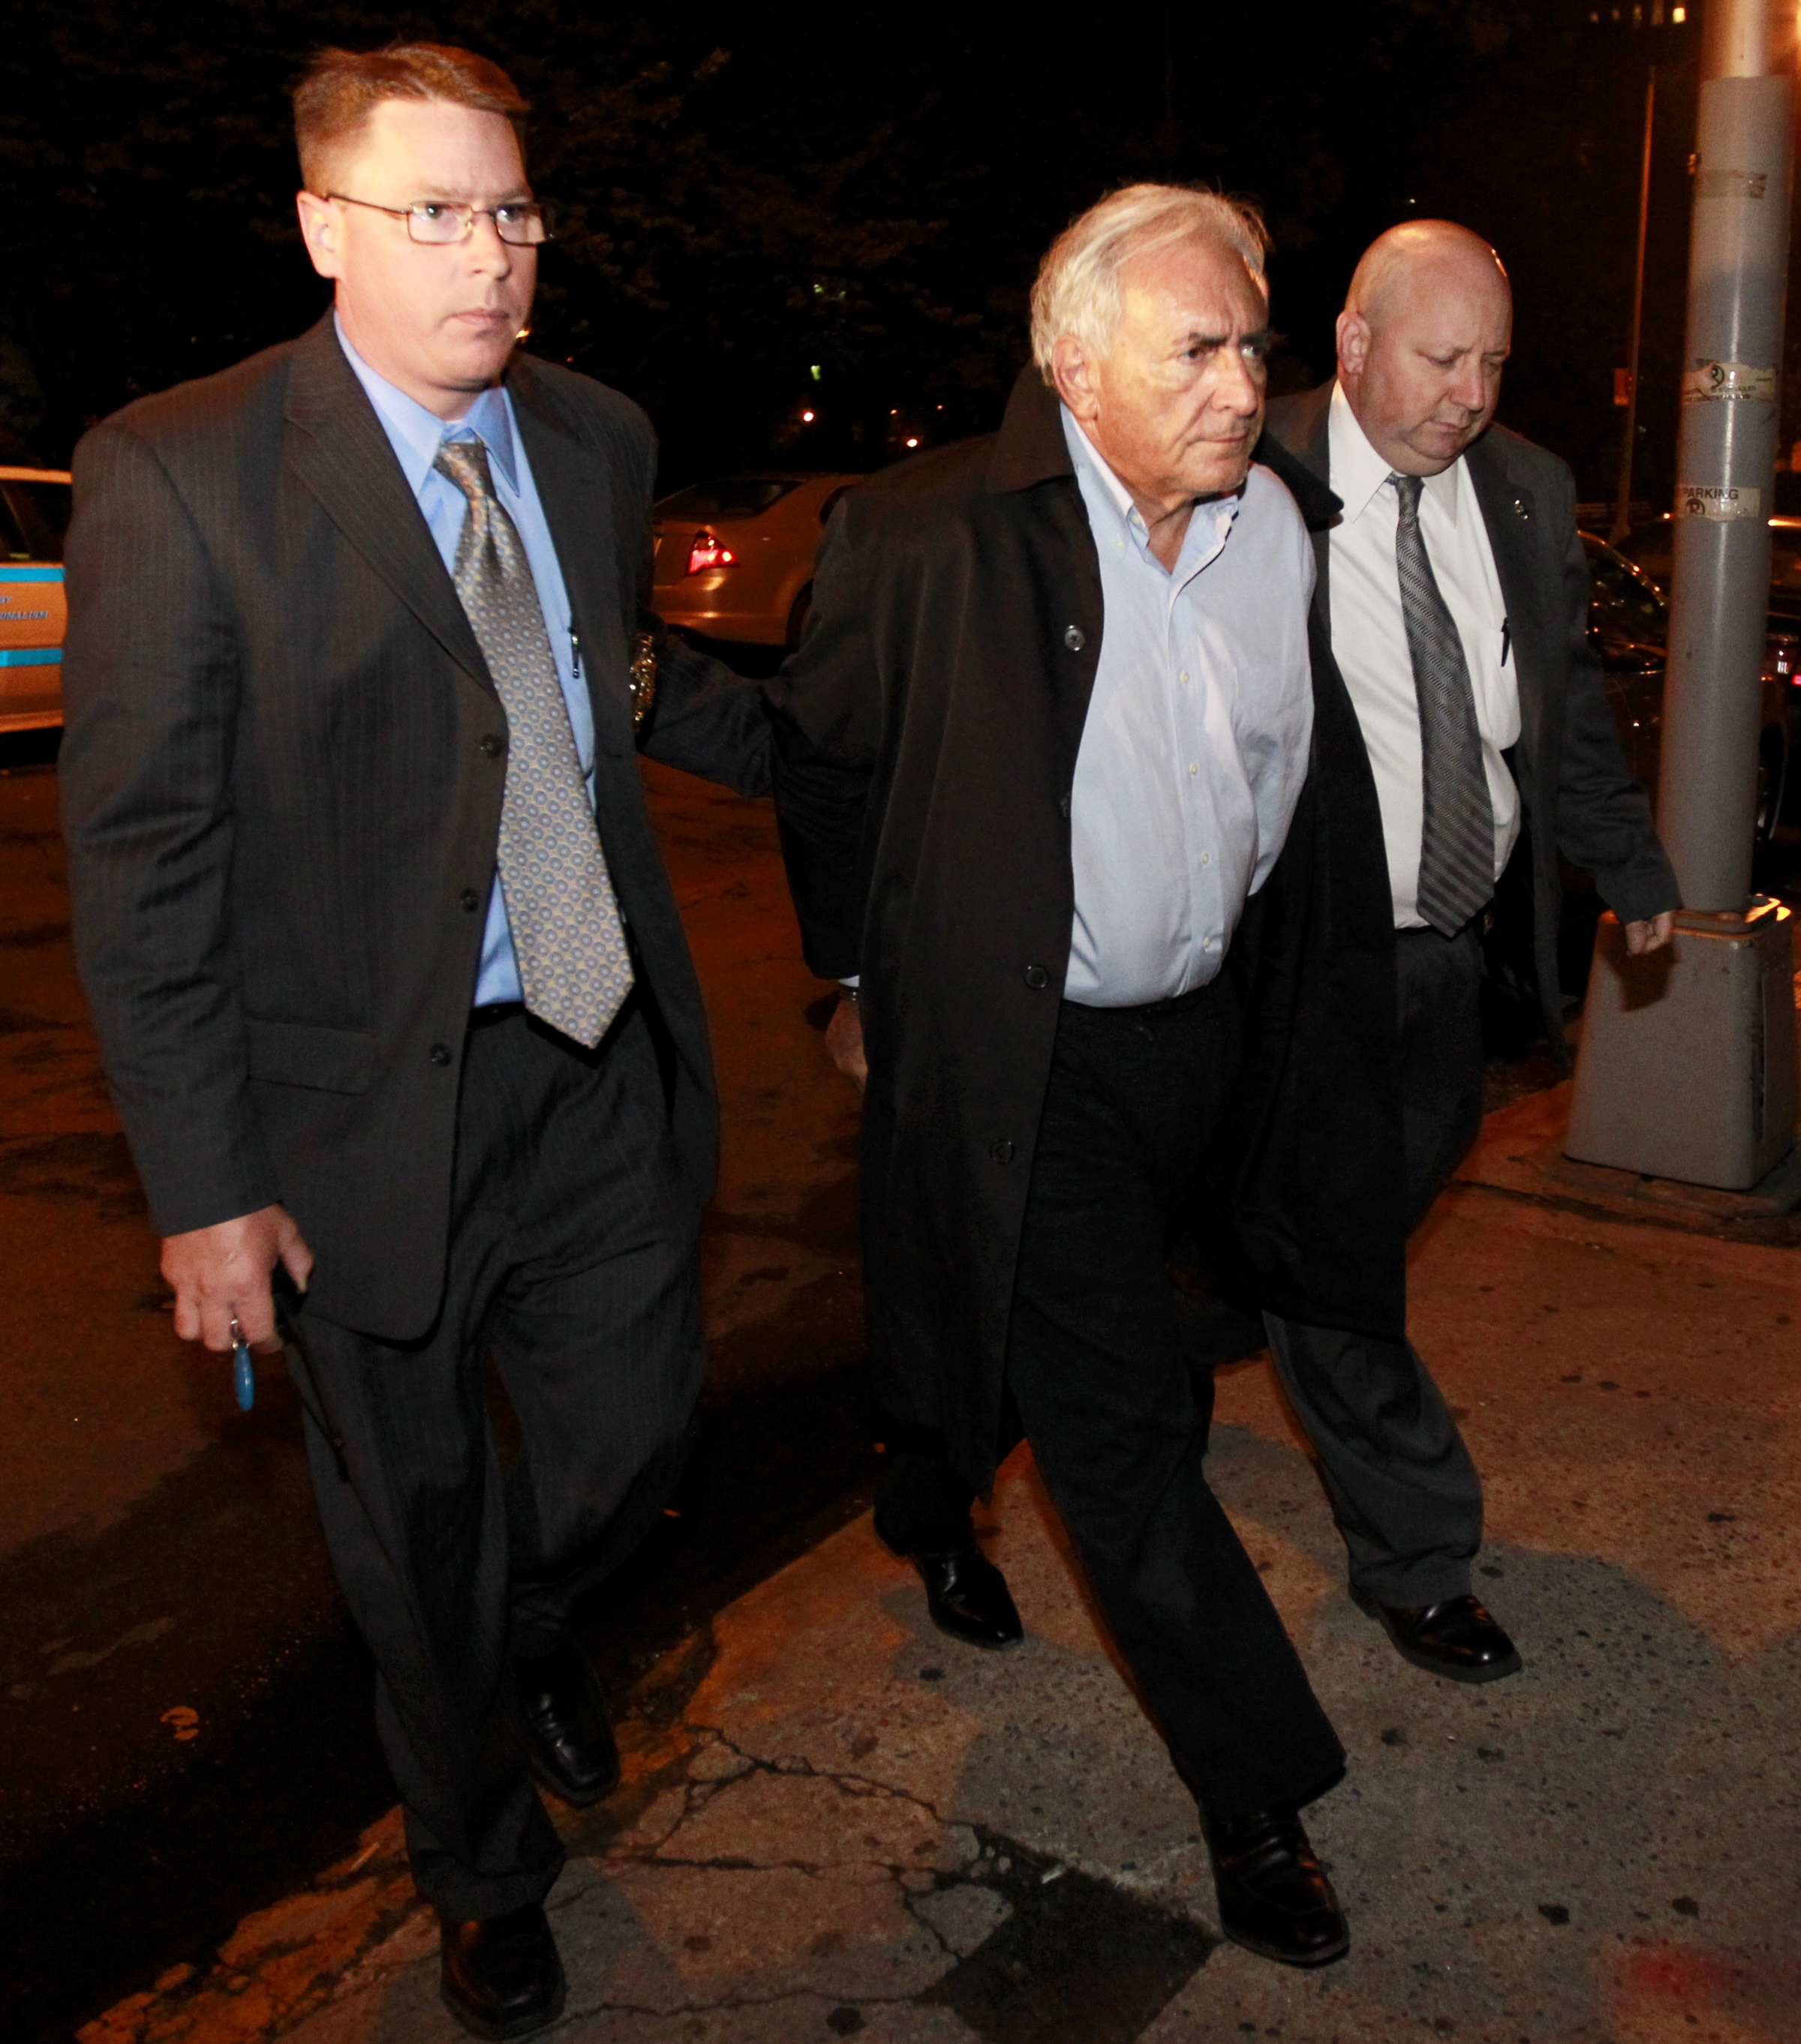 På måndagen fördes Dominique Strauss-Kahn till rätten i New York.